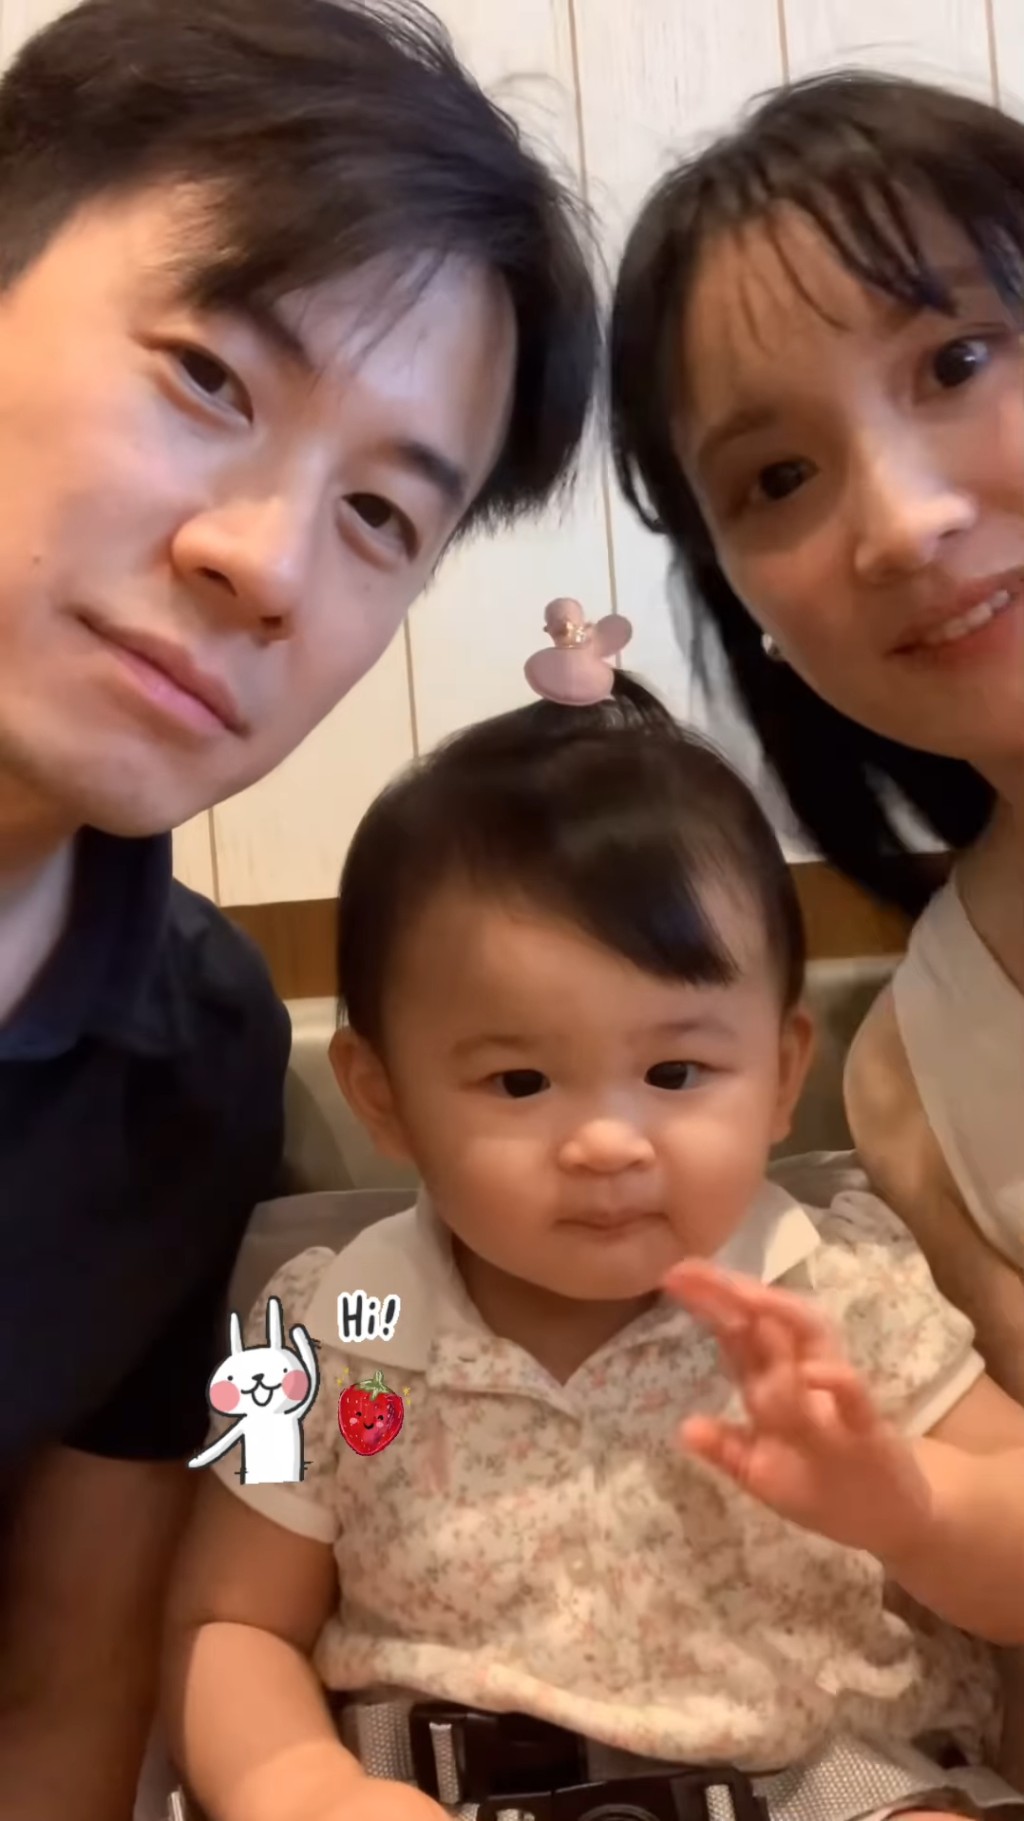 林佑蔚昨日（6日）在IG分享一段影片，見到她與老公及囡囡向鏡頭前揮手。